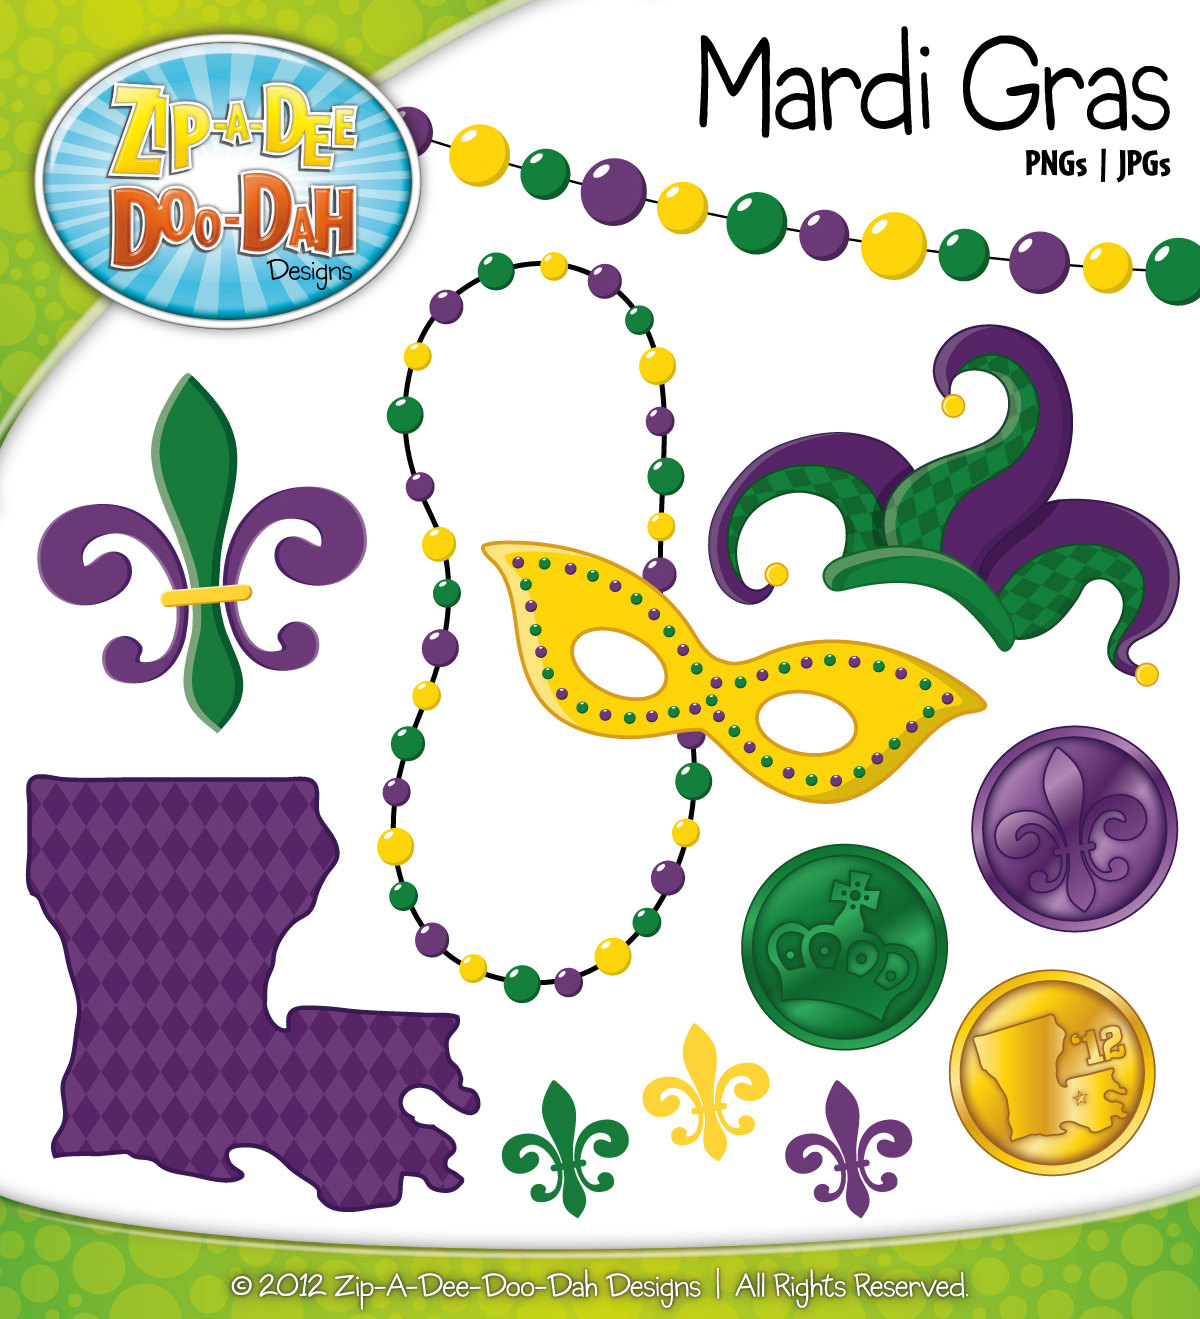 mardi-gras-beads-vector-at-getdrawings-free-download